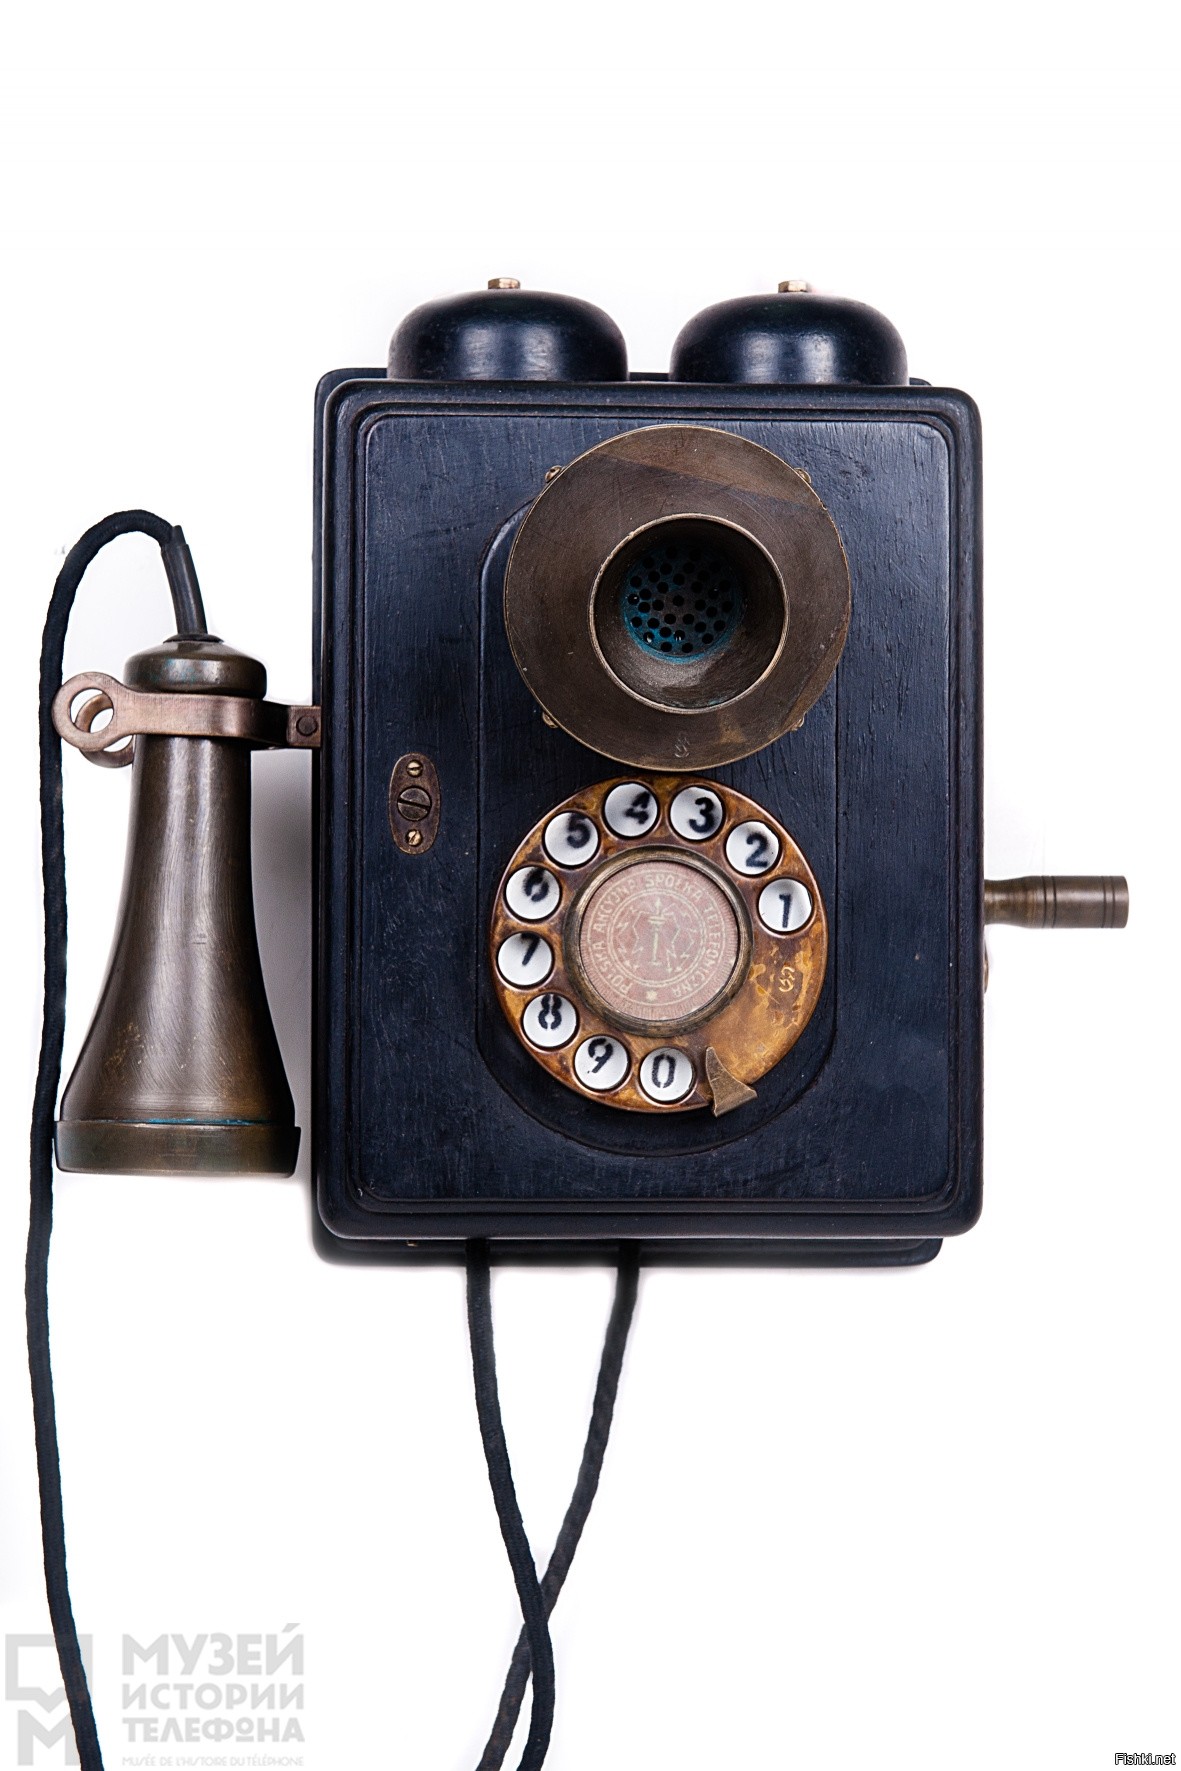 Покой 40 телефон. Телефонный аппарат фирмы Сименс 1930. Настенный телефонный аппарат. Старинный телефонный аппарат. Телефонный аппарат ретро.